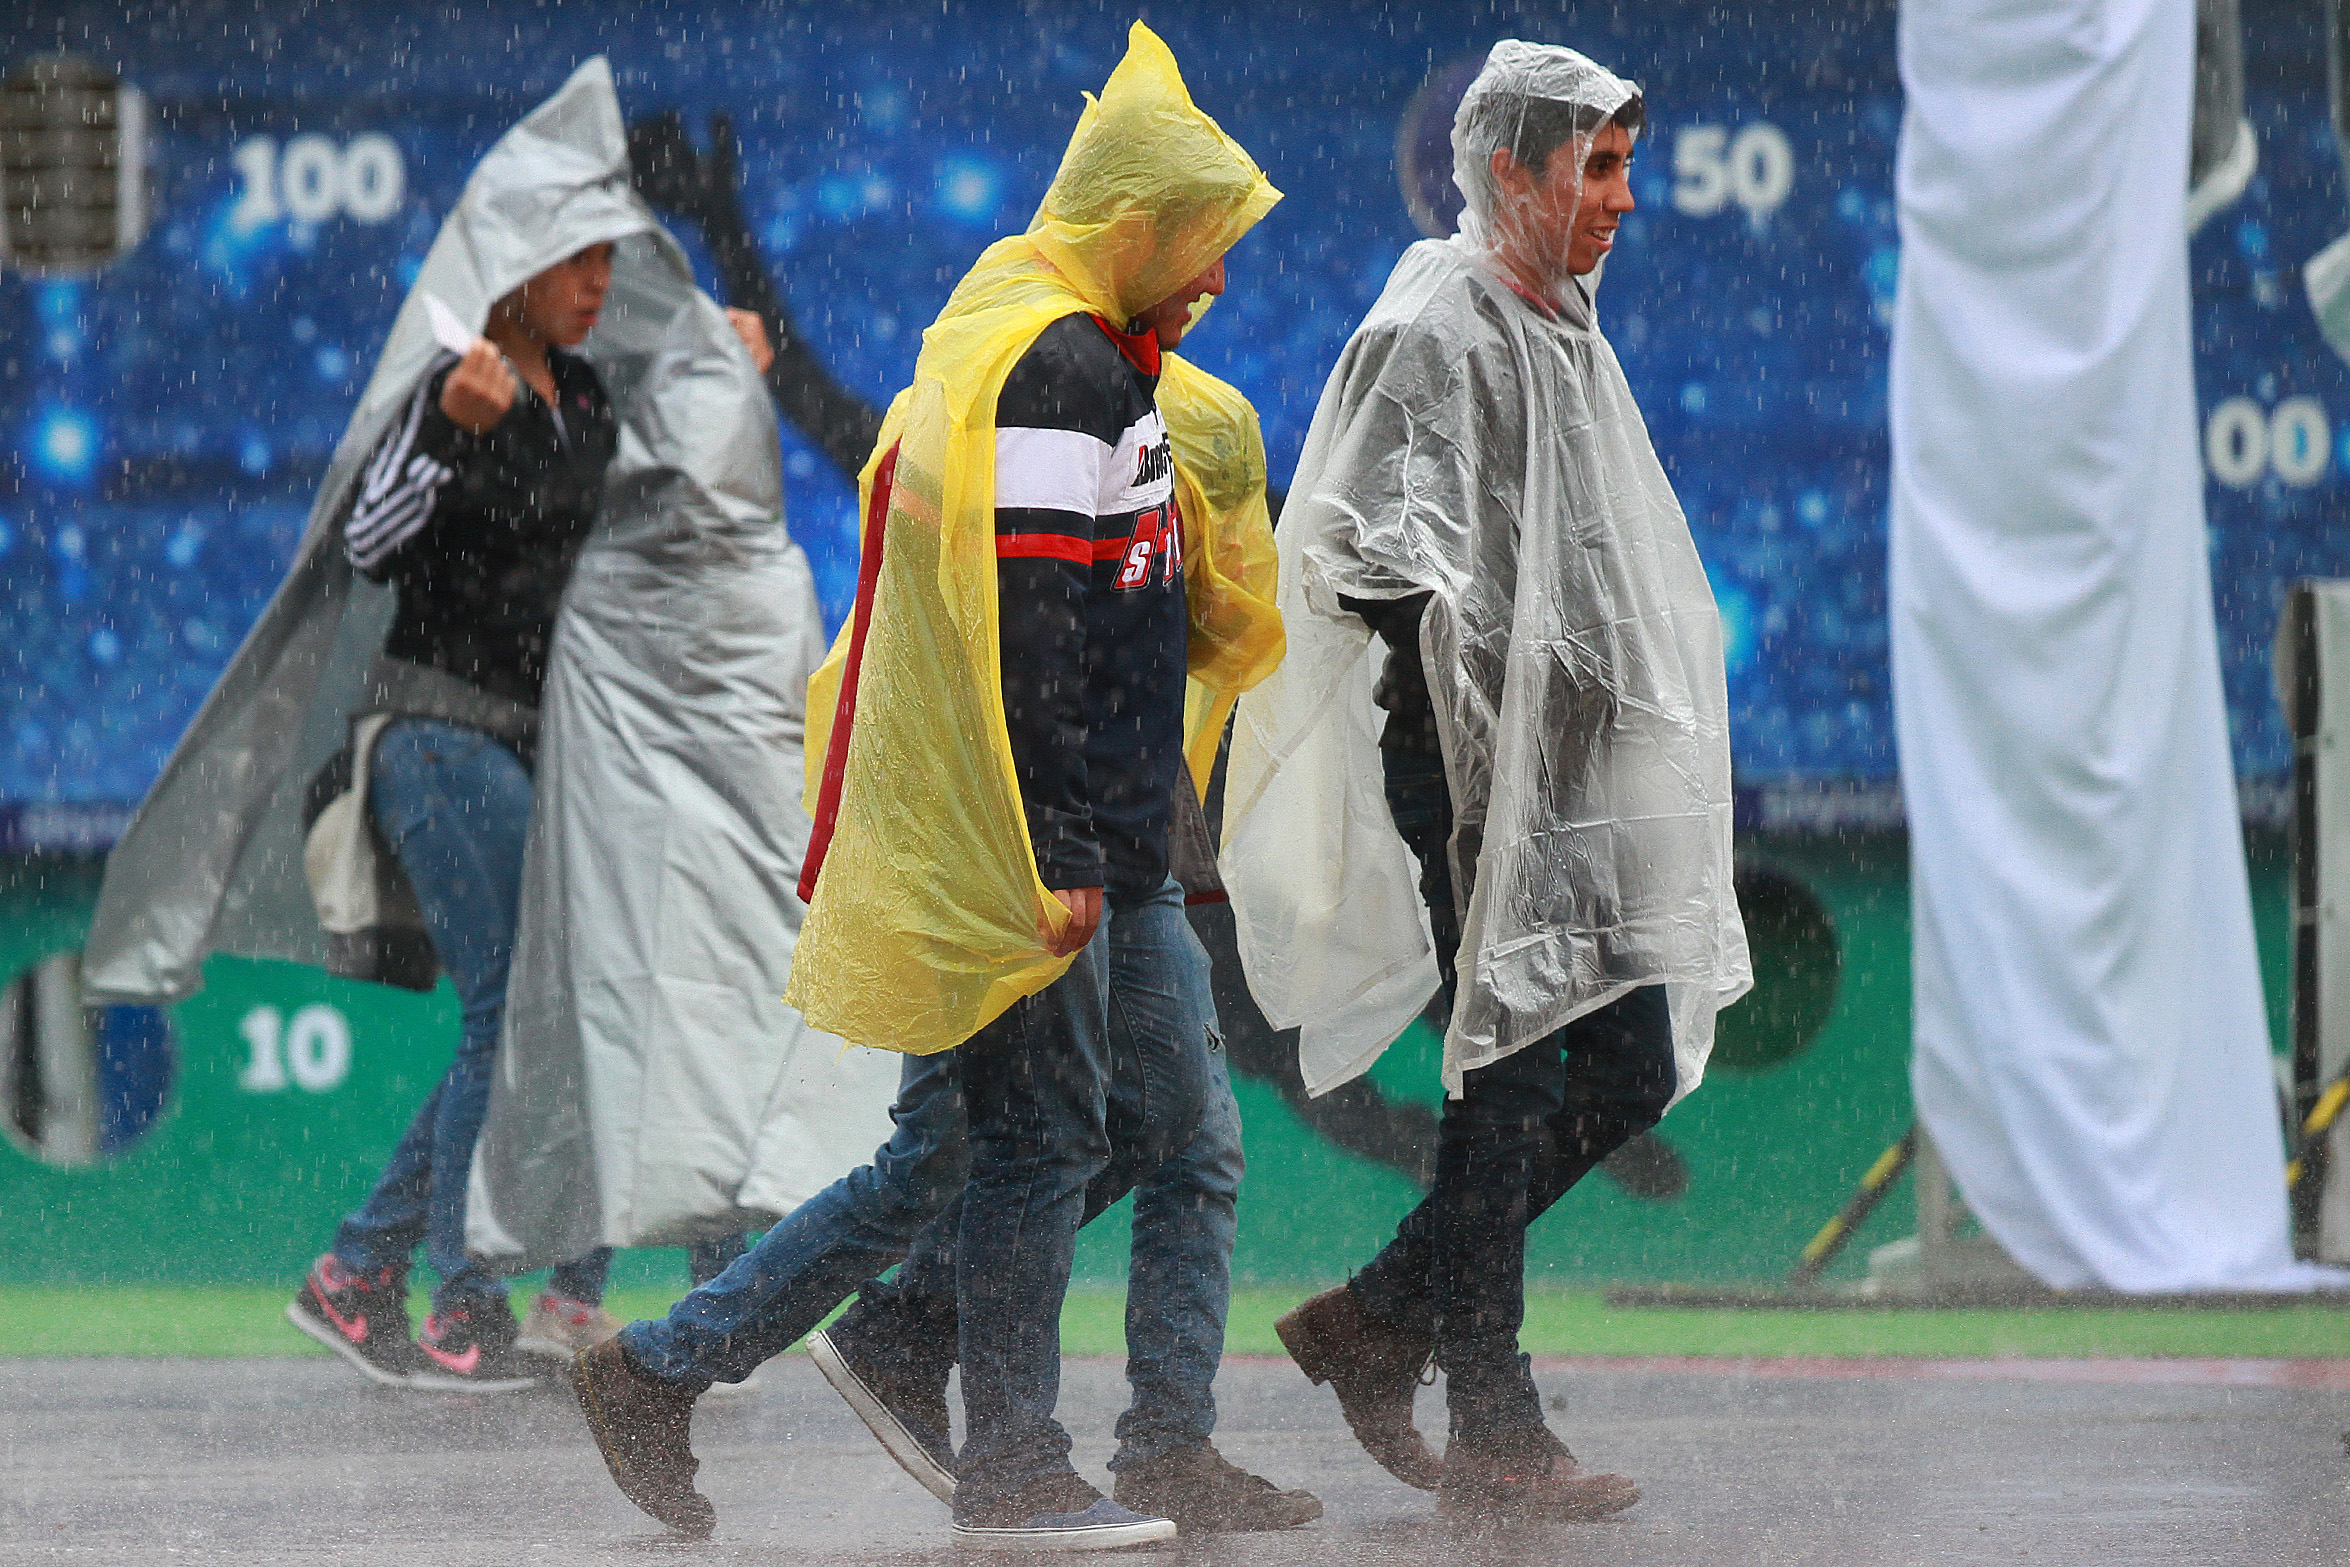 Activan alerta naranja en cinco delegaciones de CDMX por fuertes lluvias